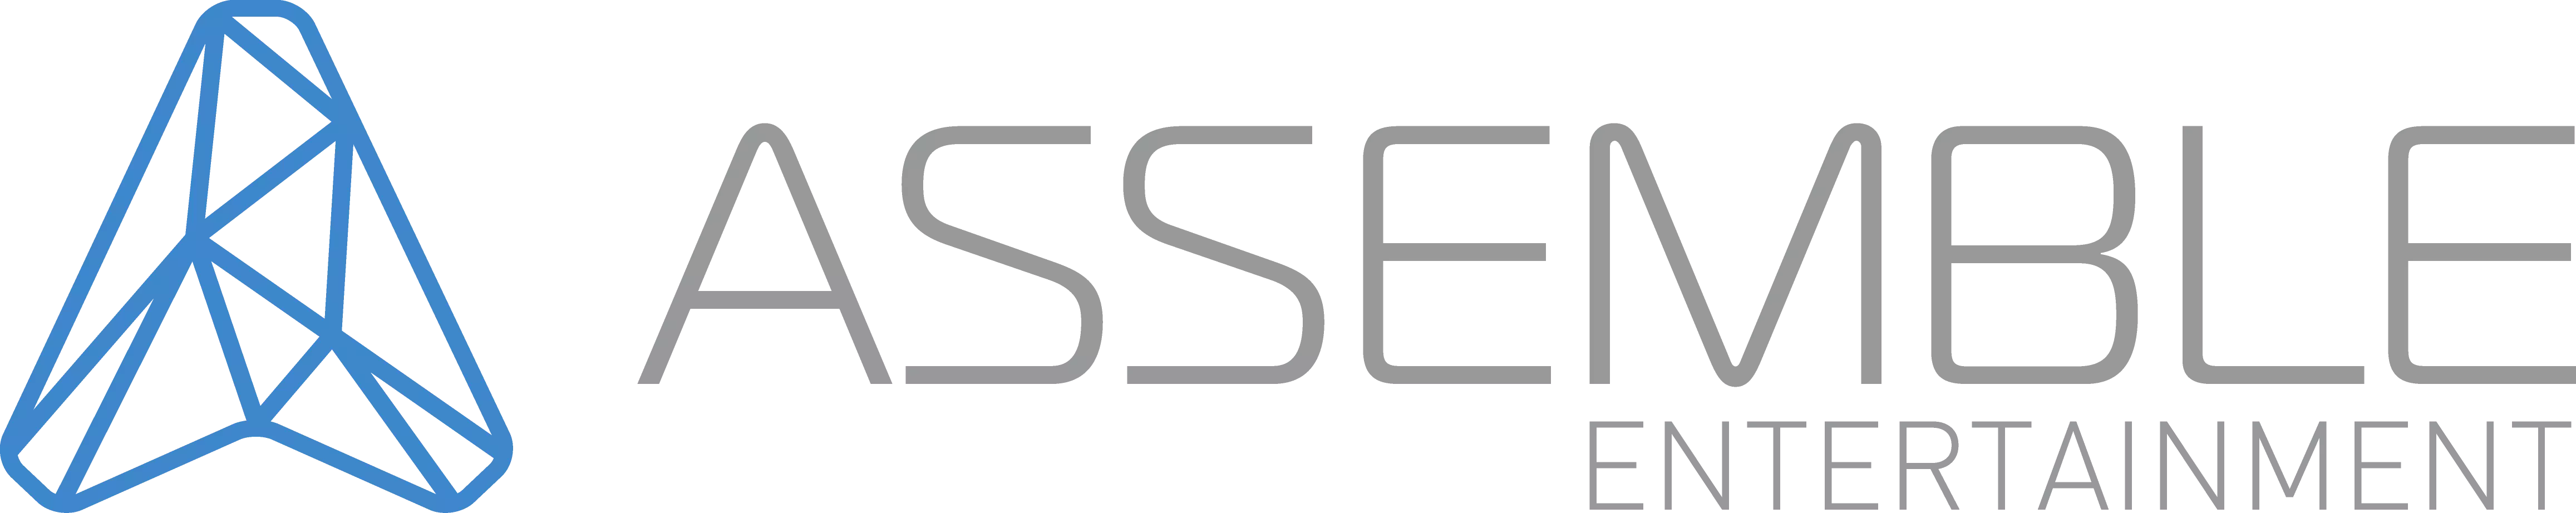 Assemble Entertainment GmbH, базирующаяся в Висбадене, является немецким производителем и издателем компьютерных игр и организатором конференции GermanDevDays (GDD).